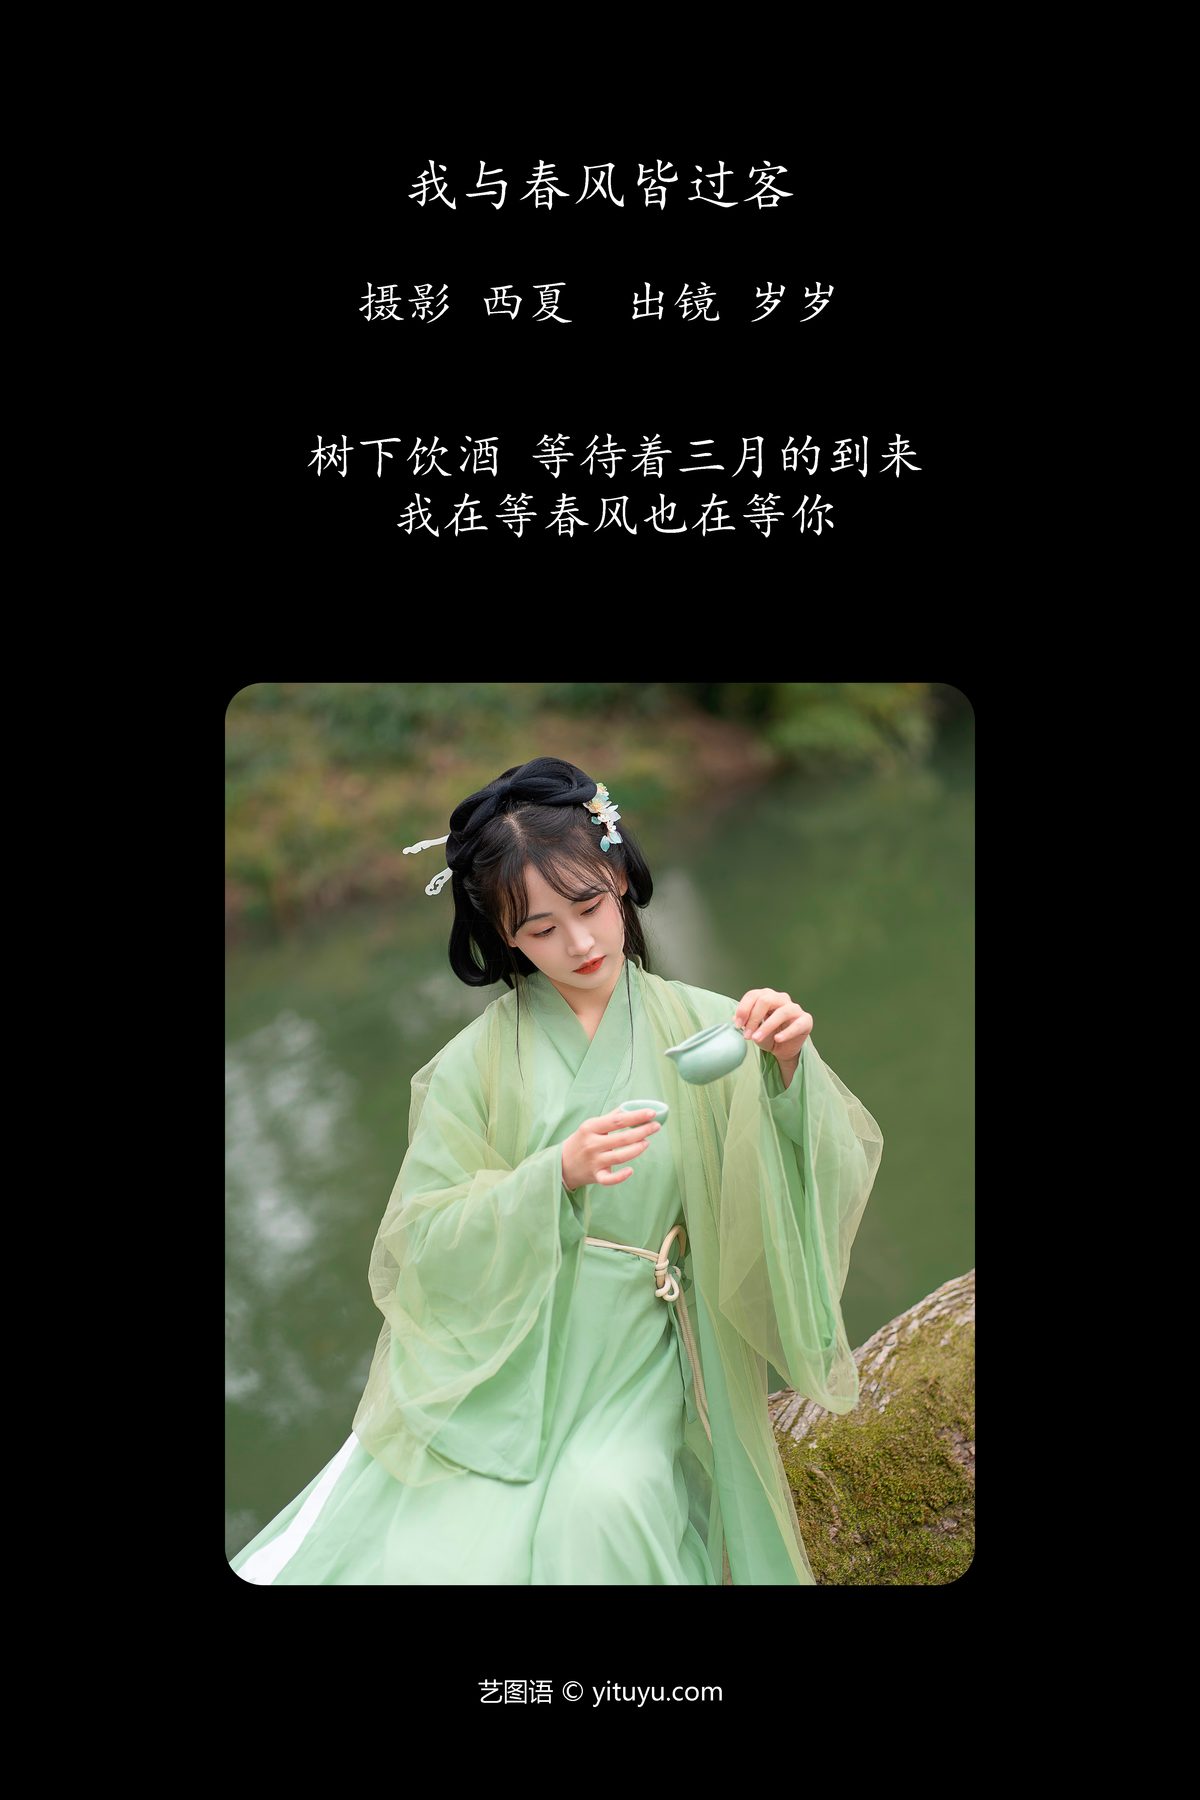 YiTuYu艺图语 Vol 6061 Jiao Yi Zhi Sui Sui 0002 9317451728.jpg